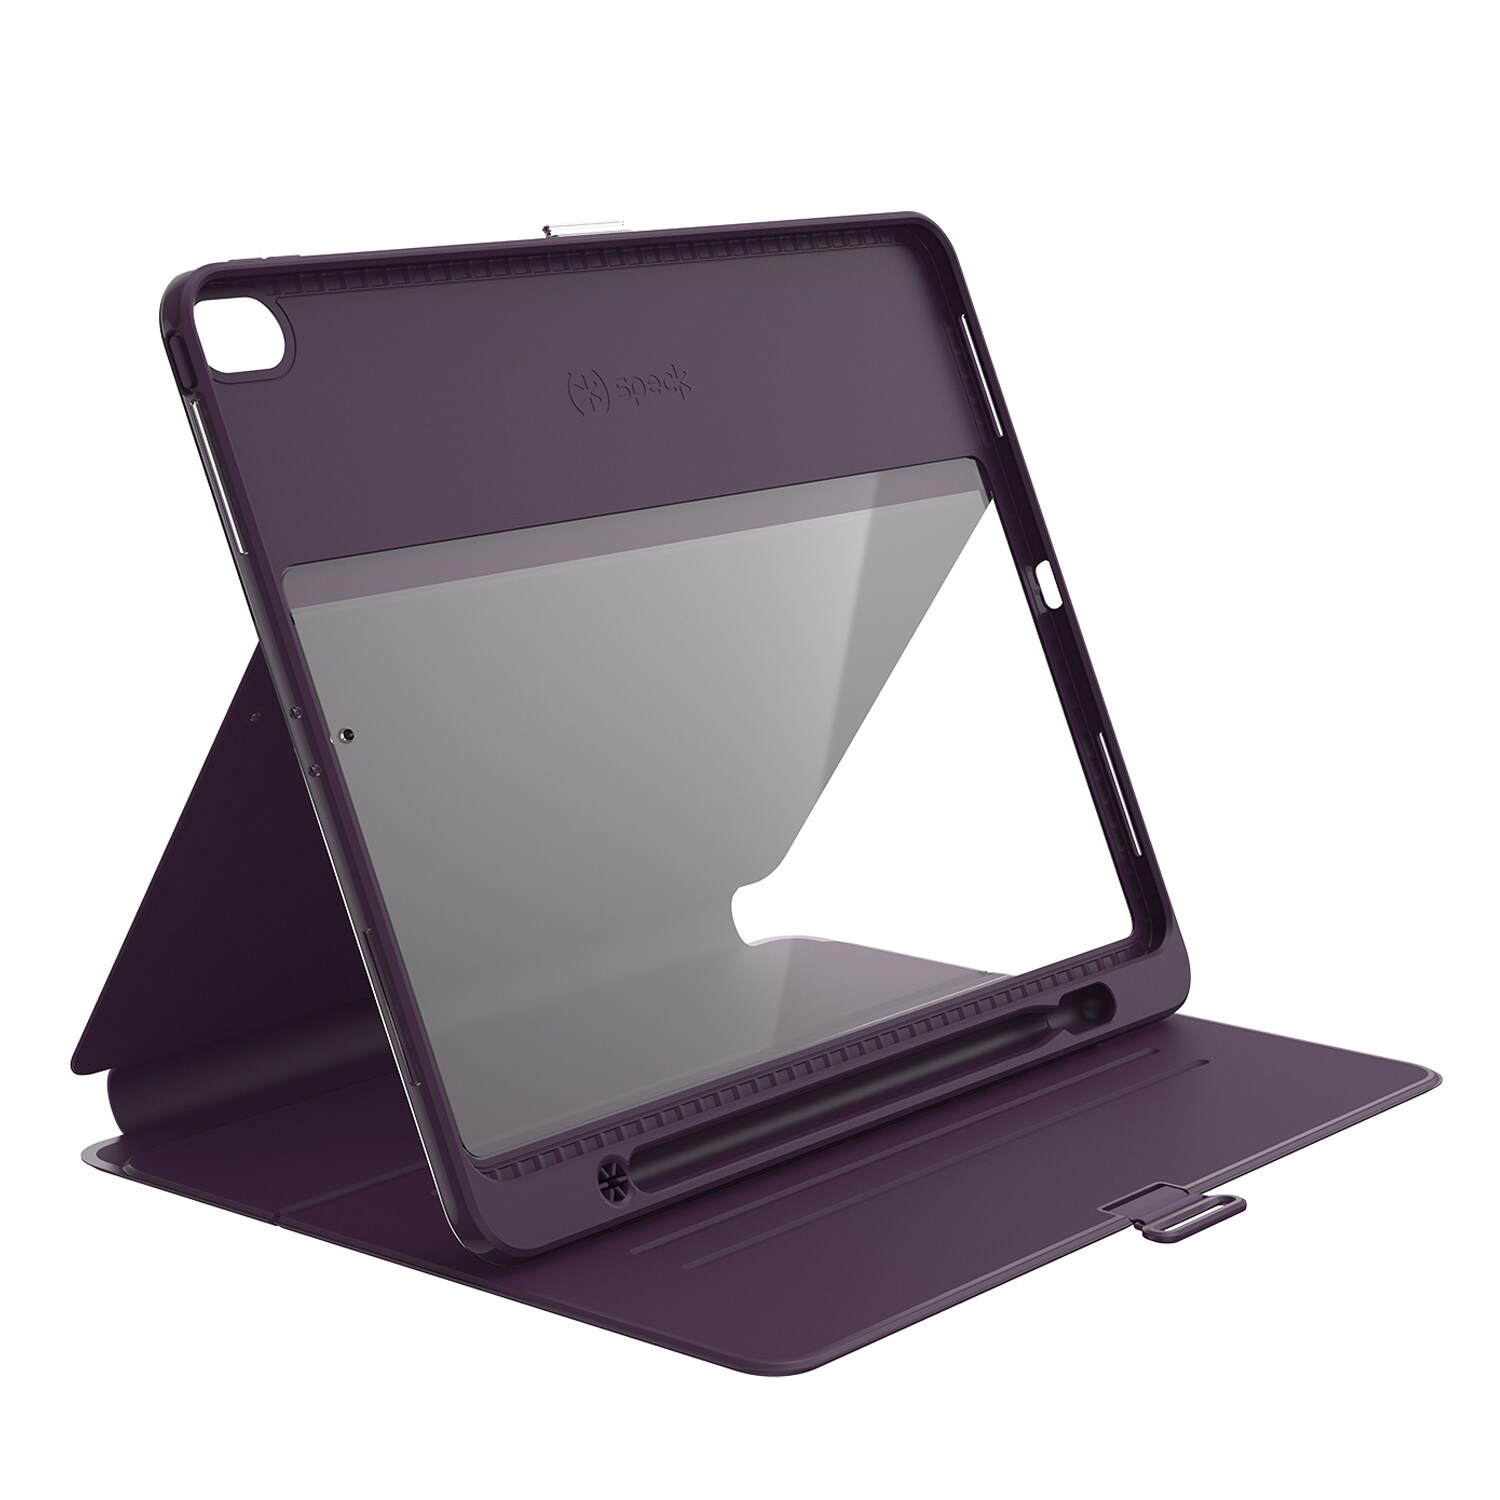 Speck Presidio Pro Folio Protective Case For 12 9 Ipad Pro 18 Purple 1214 7911 Tablet Accessories Cdw Com